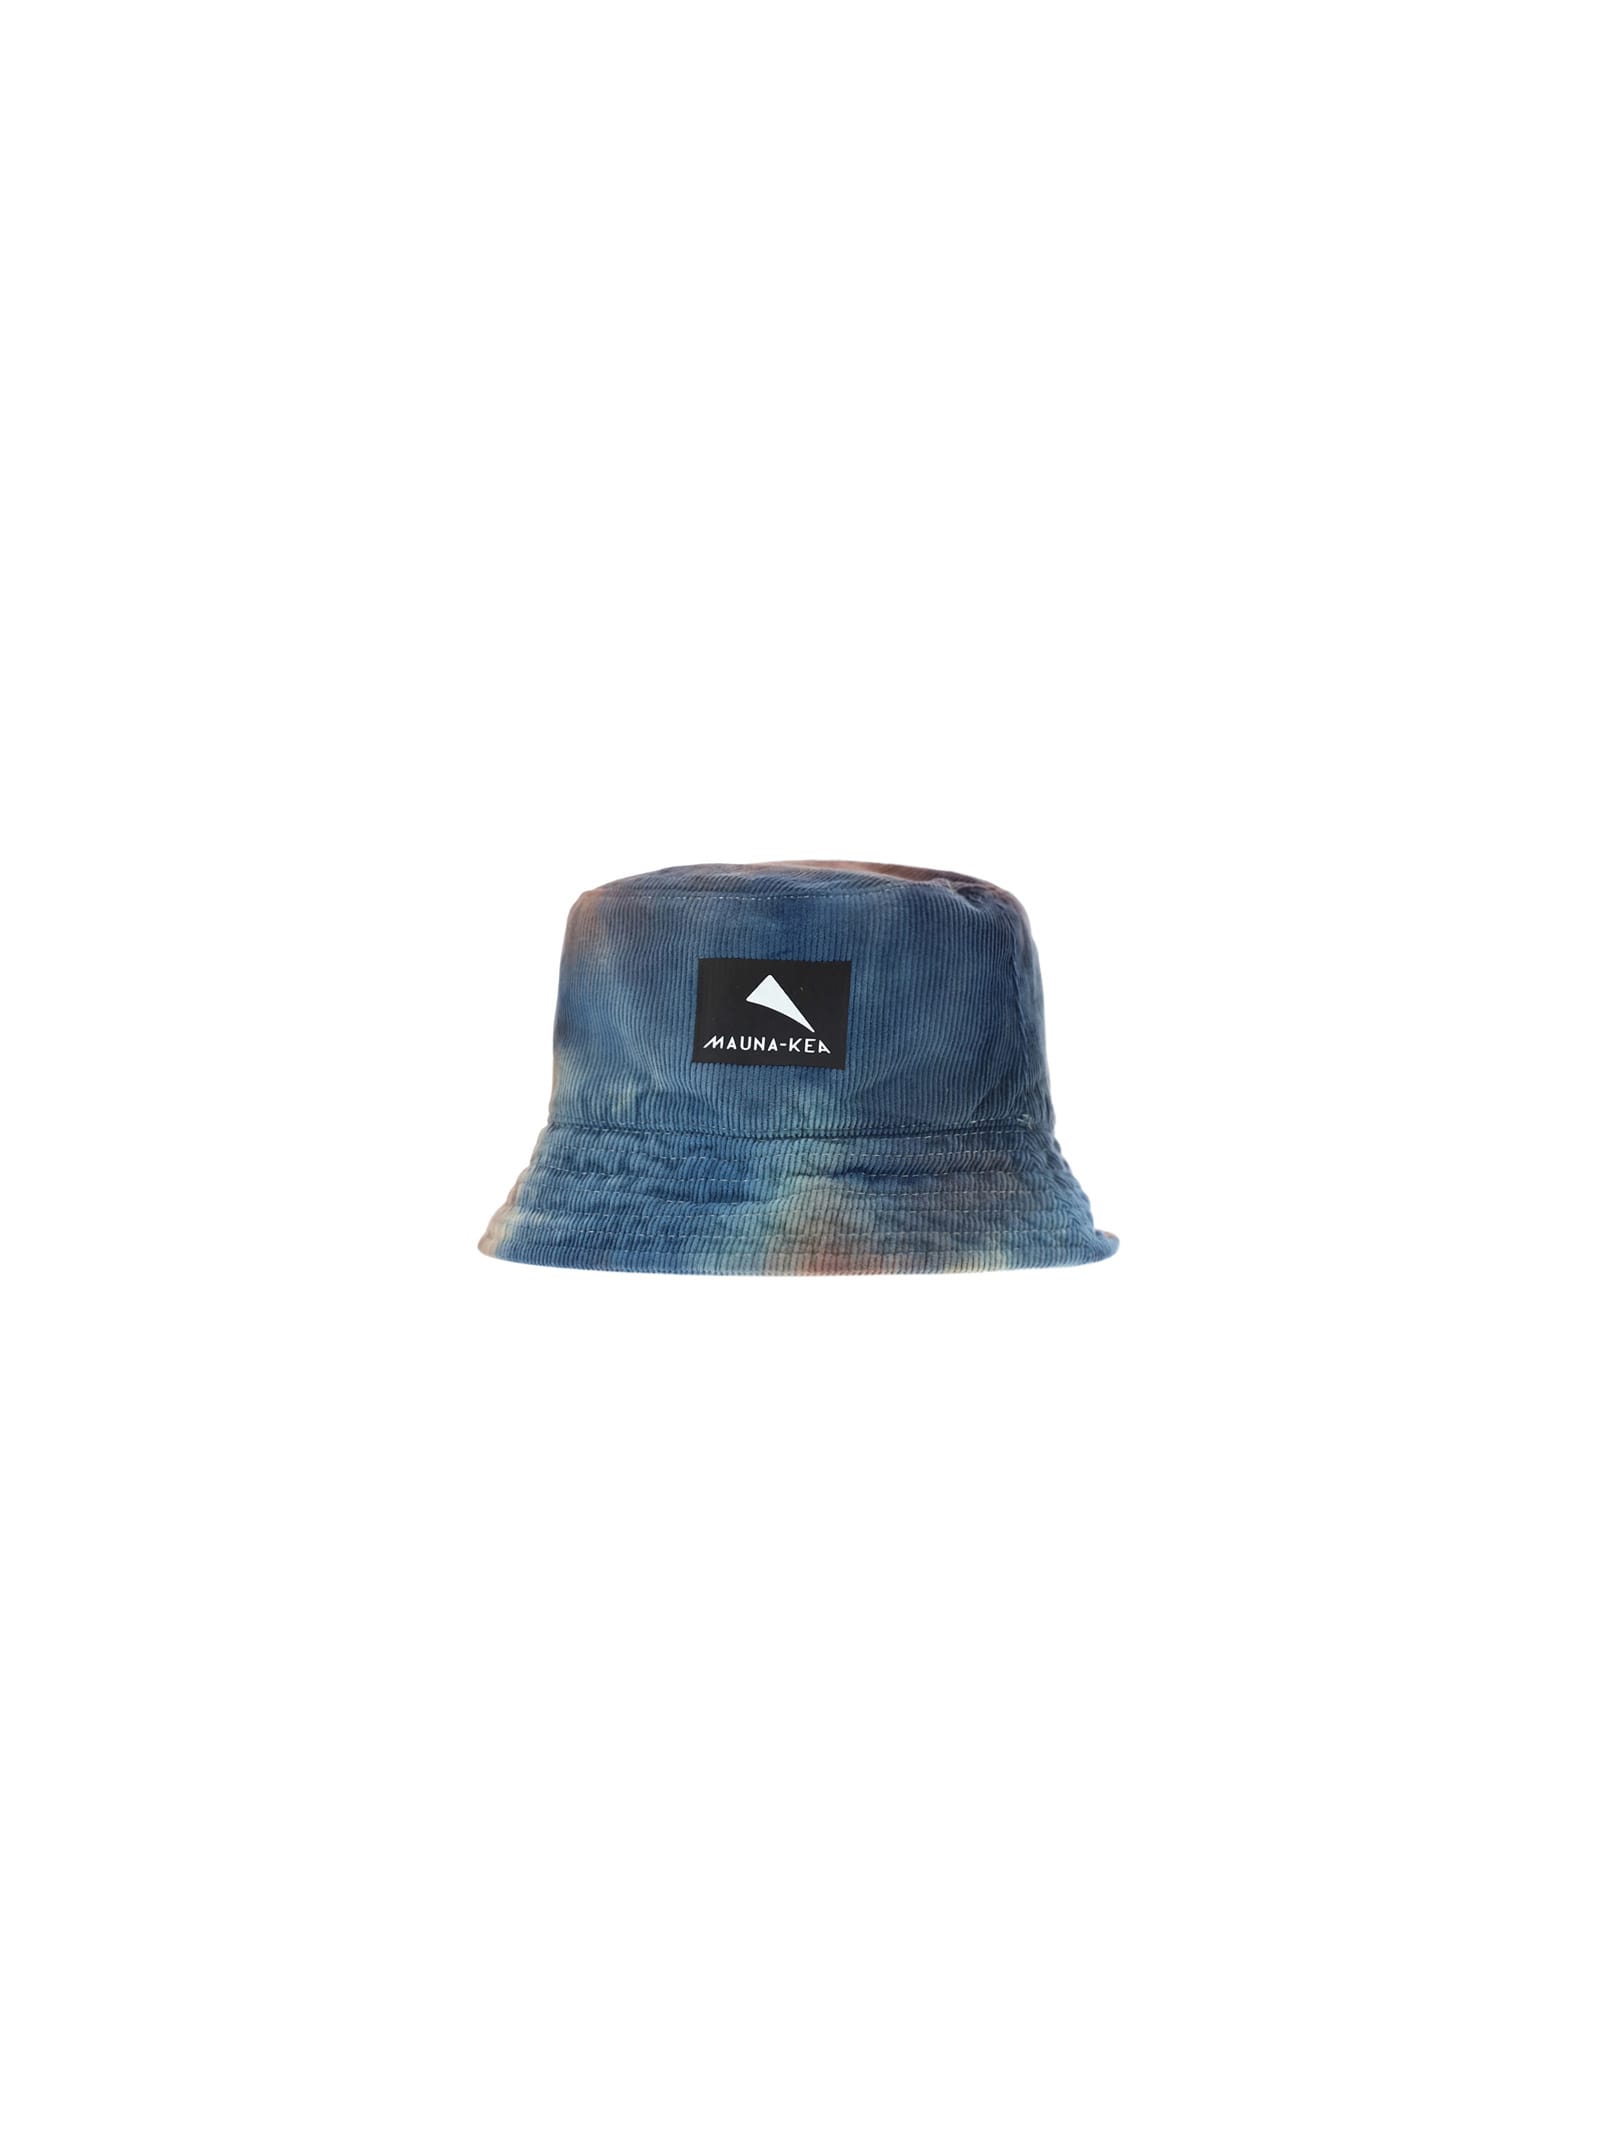 Mauna Kea Bucket Hat